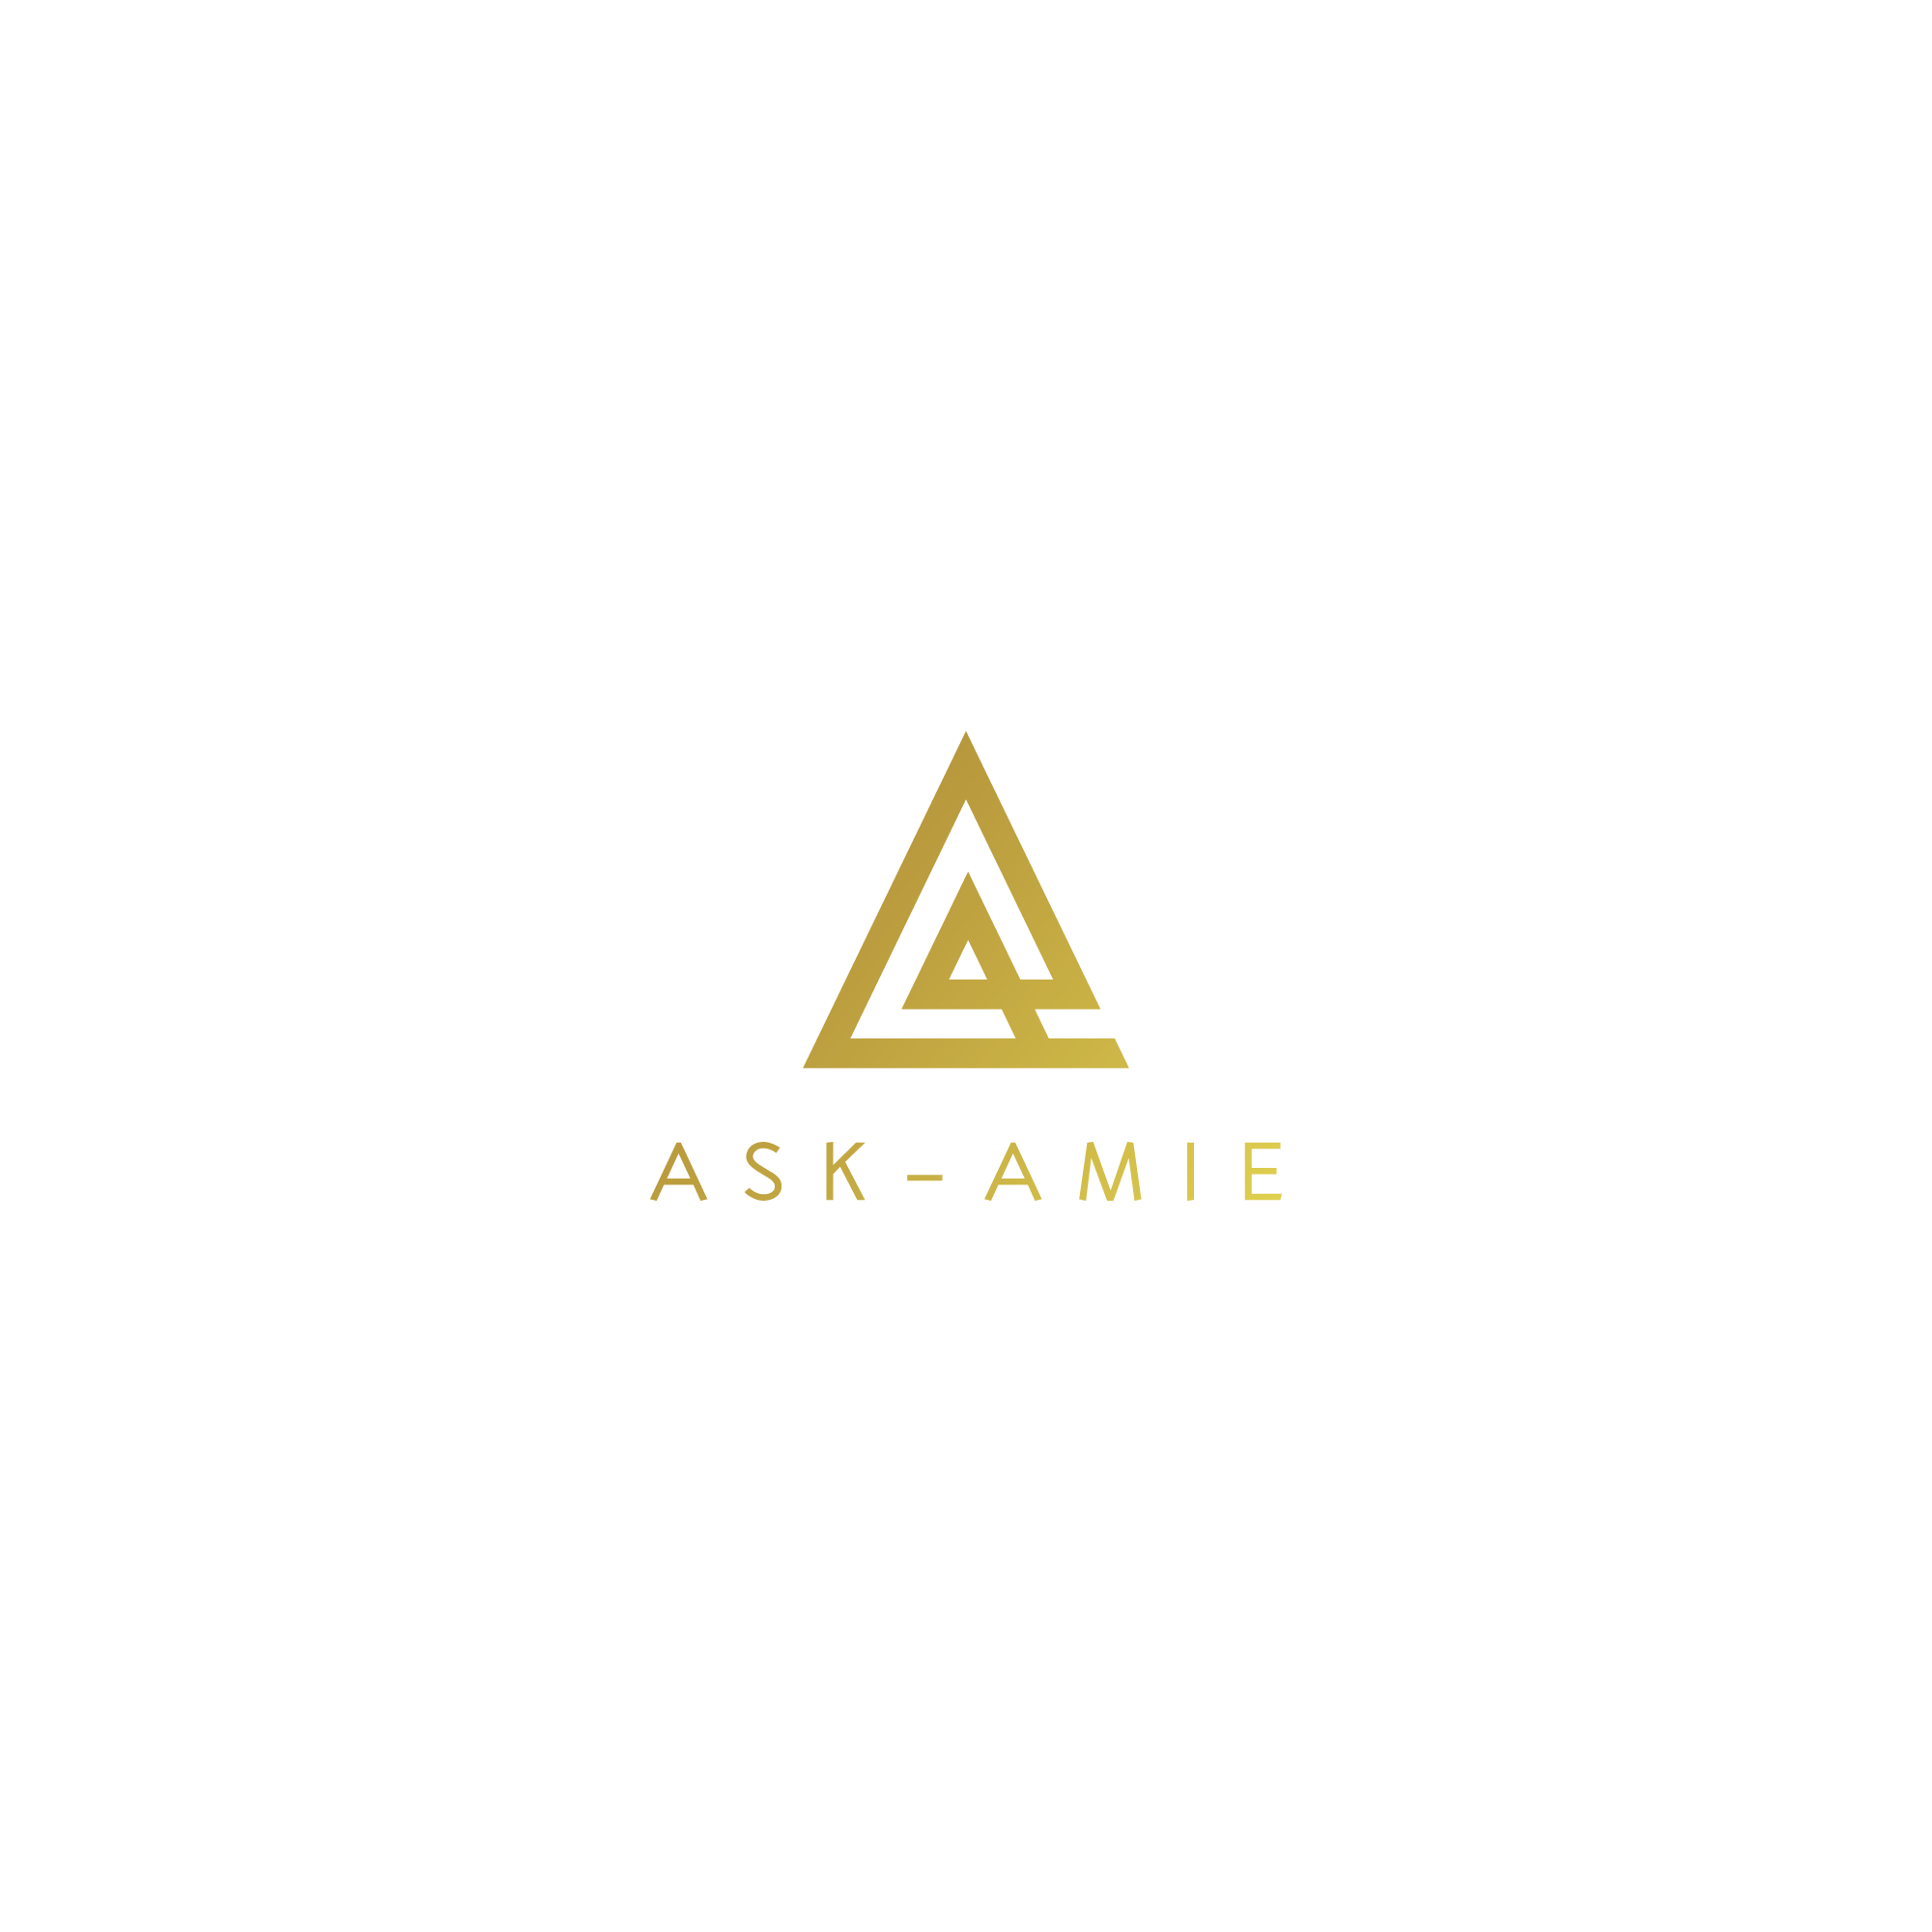 ASK-AMIE Transcript Services